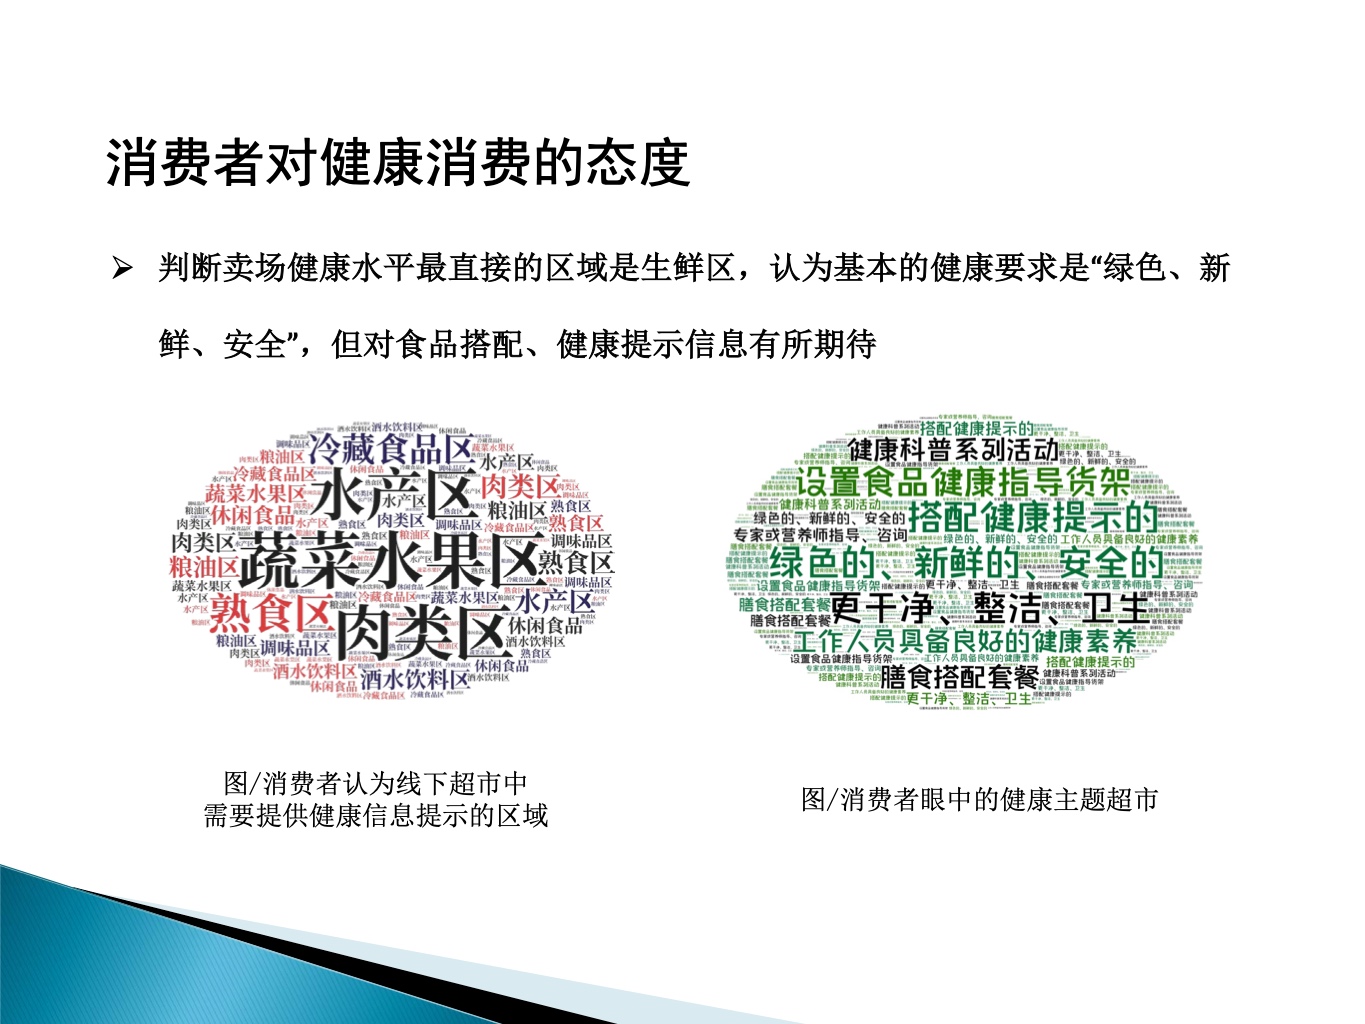 中国连锁经营协会：“健康”干预对消费者购买行为的影响